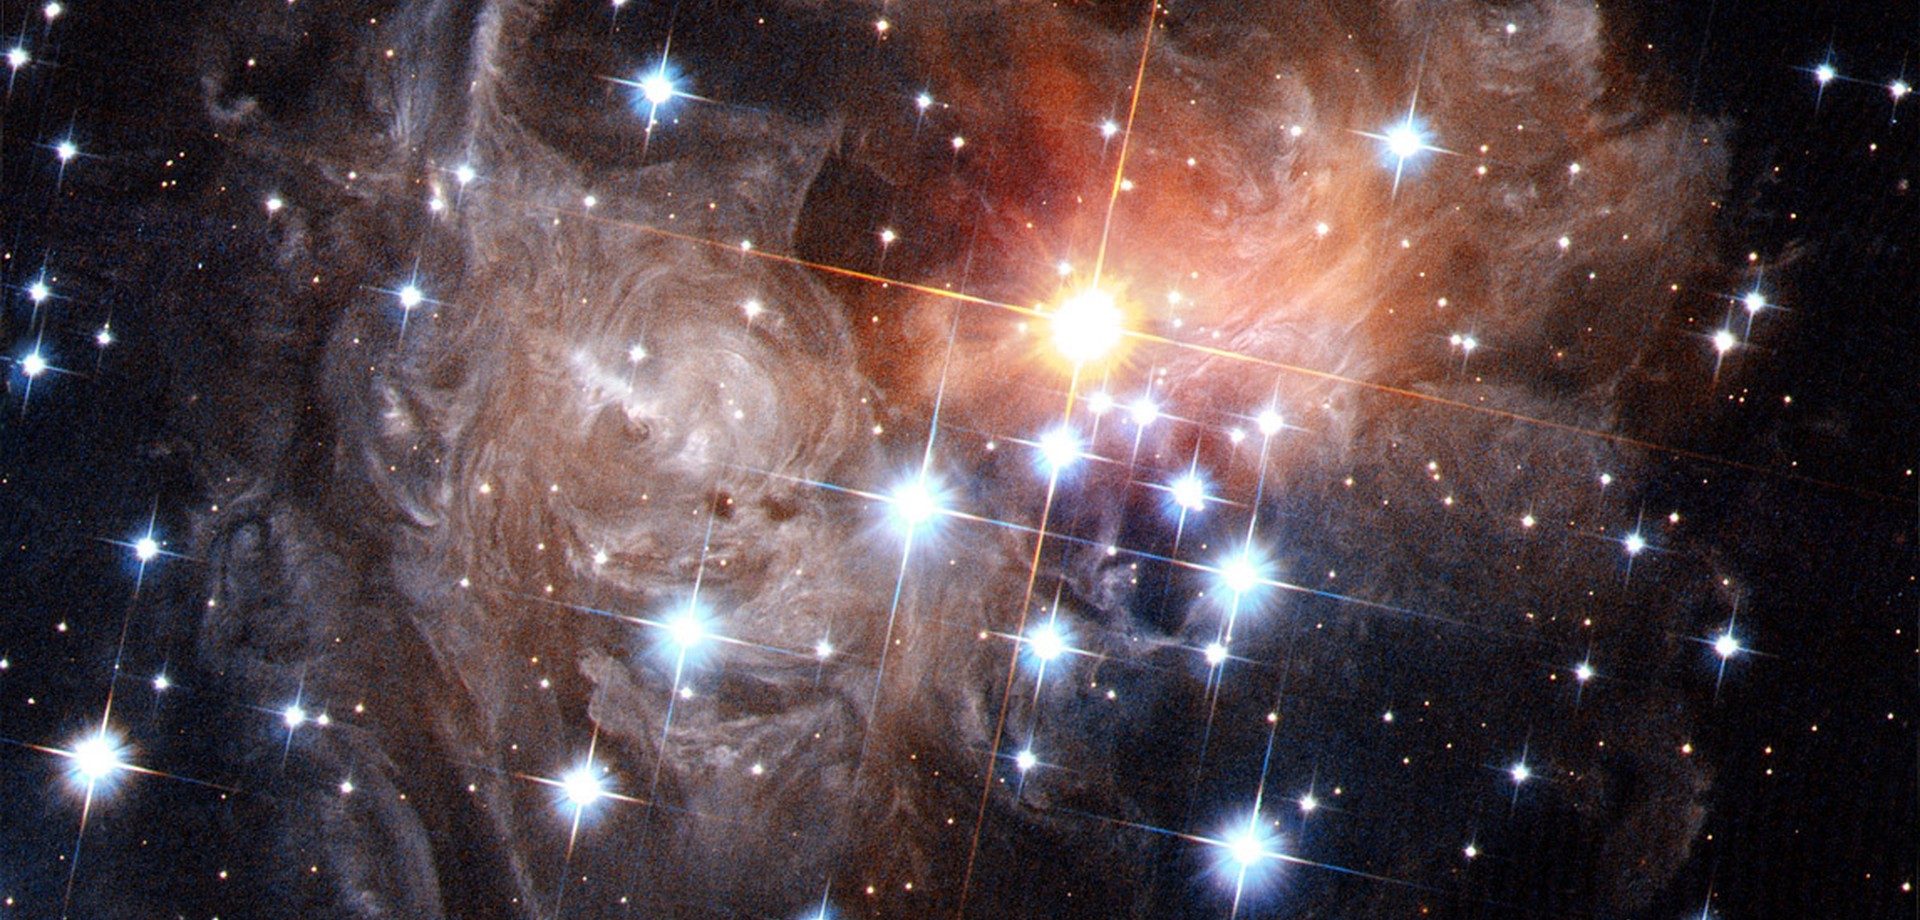 Der veränderliche Stern V838 Monocerotis. Foto: NASA, ESA, and H. Bond (STScI)